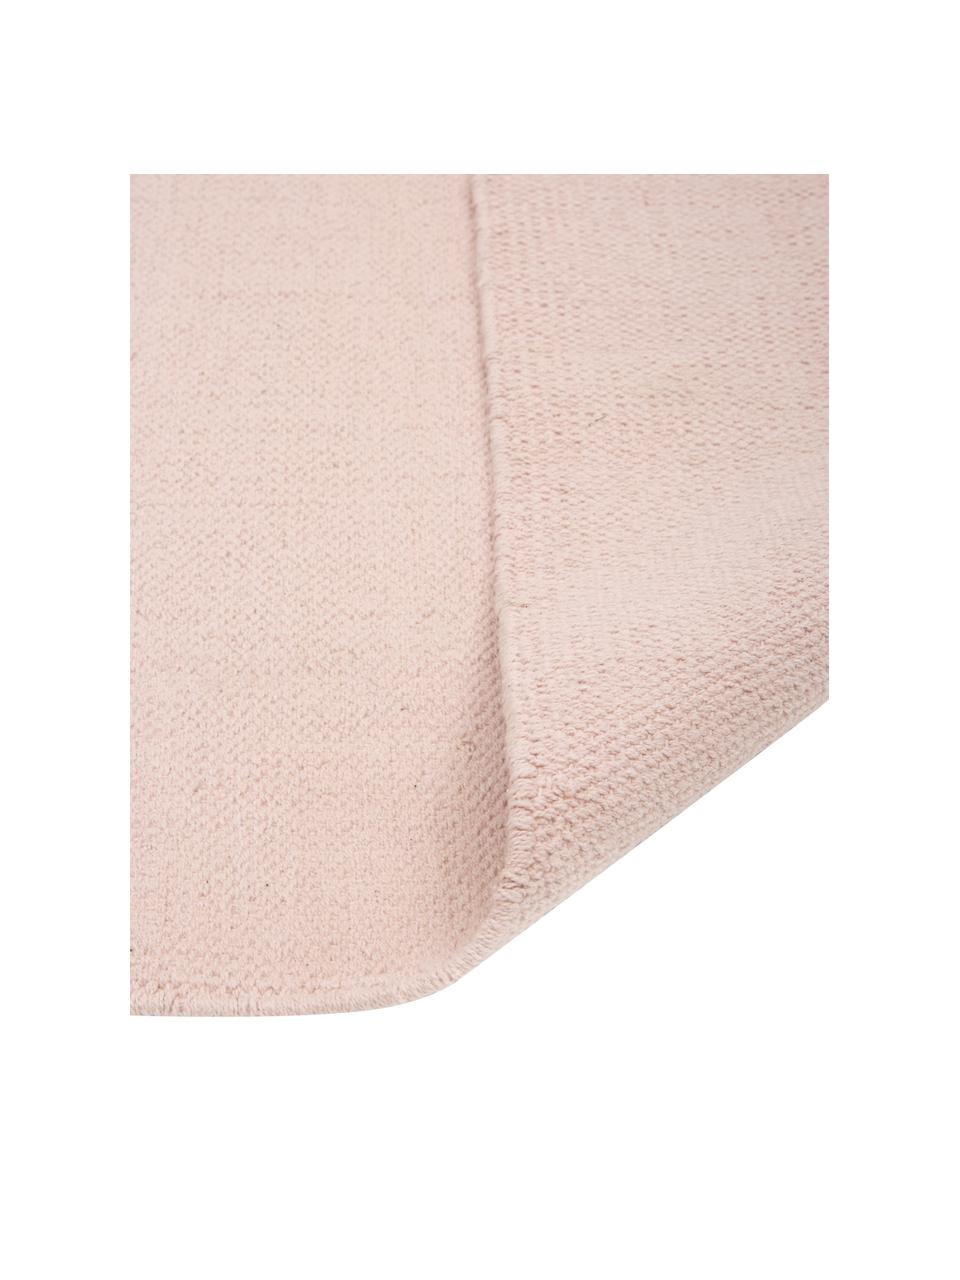 Tappeto sottile in cotone rosa tessuto a mano Agneta, 100% cotone, Rosa, Larg. 160 x Lung. 230 cm (taglia M)